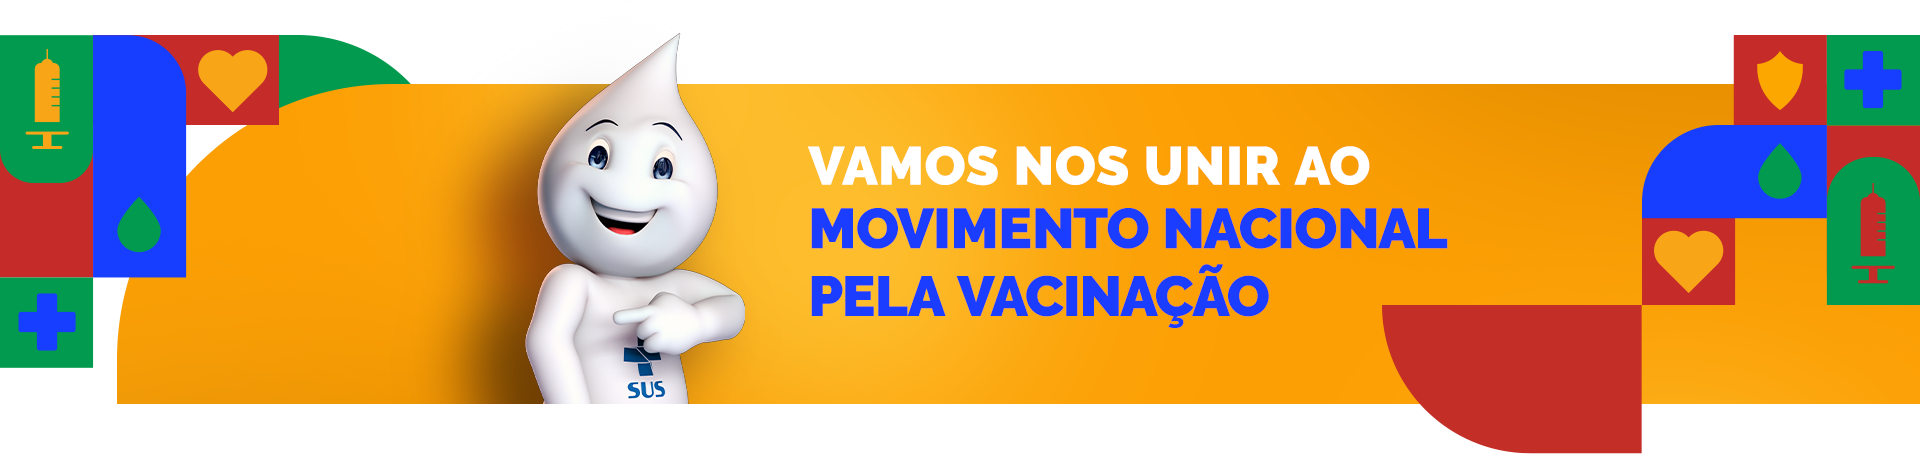 Vamos nos unir ao Movimento Nacional pela Vacinação